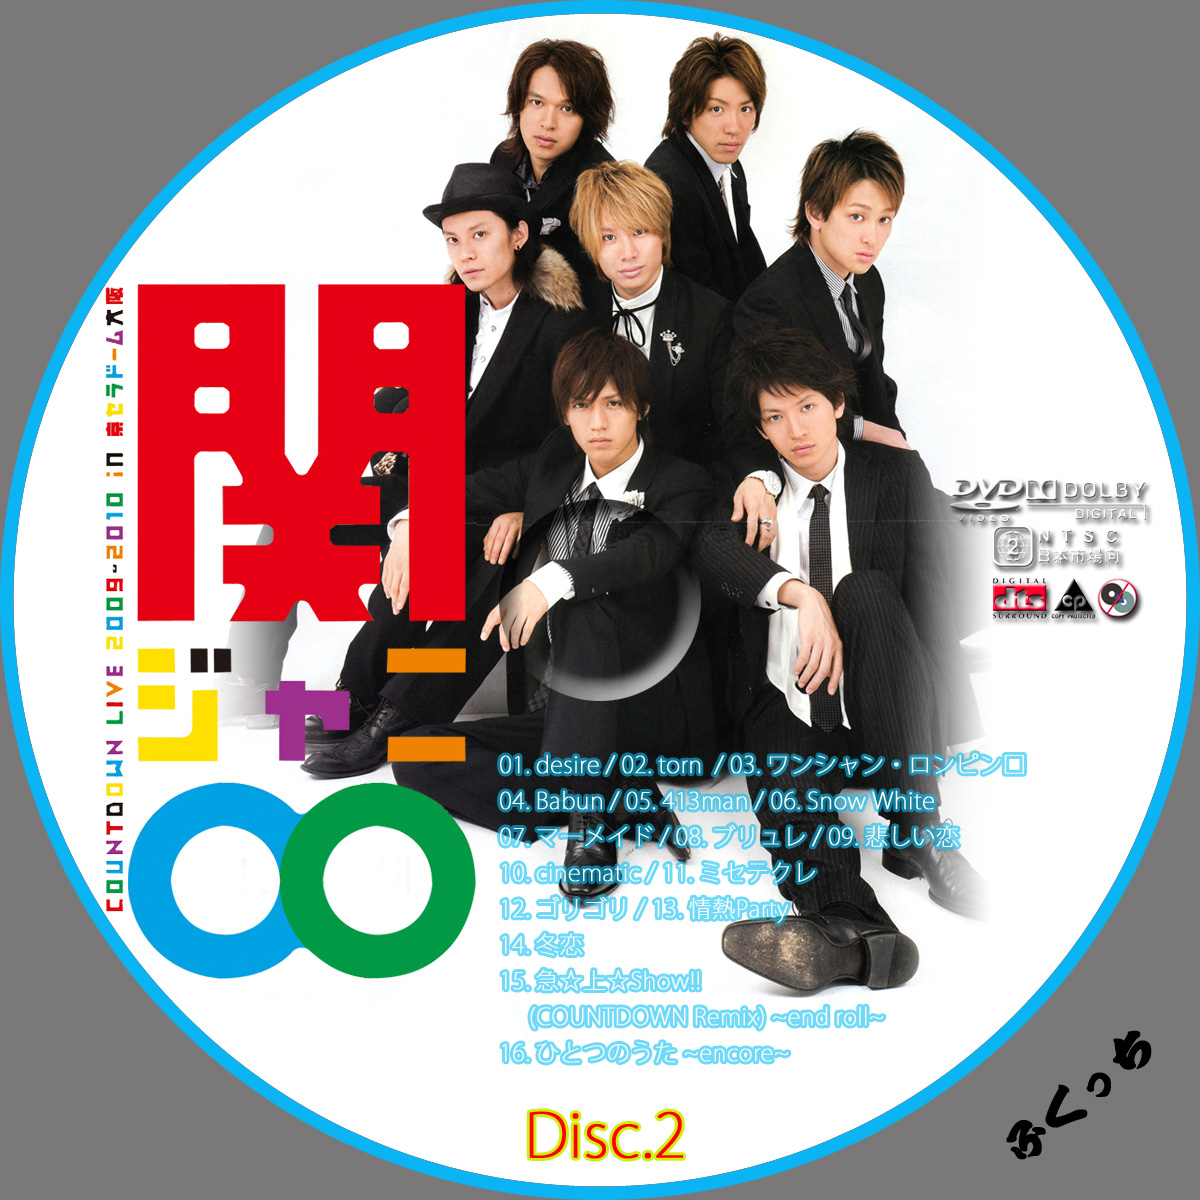 ふくっちの音楽cd Dvdカスタムレーベル 関ジャニ Countdown Live 09 10 In 京セラドーム大阪